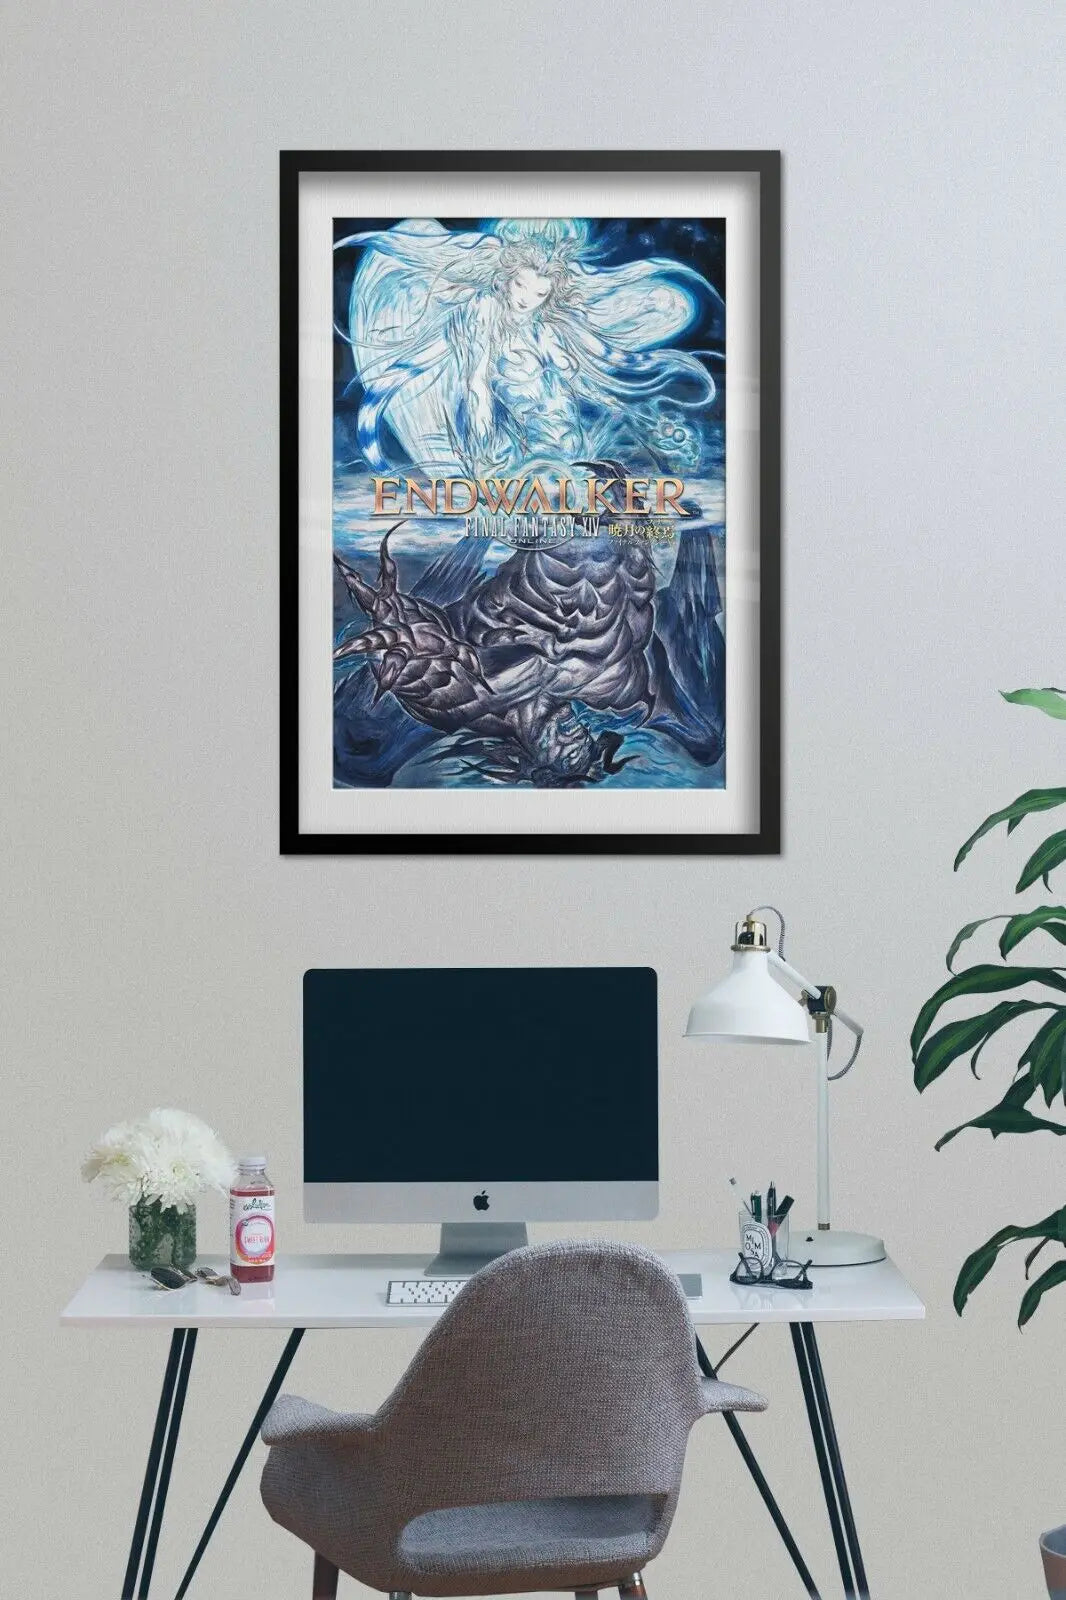 Final Fantasy XIV End Walker jeu impression toile affiche pour salon décor maison mur photo